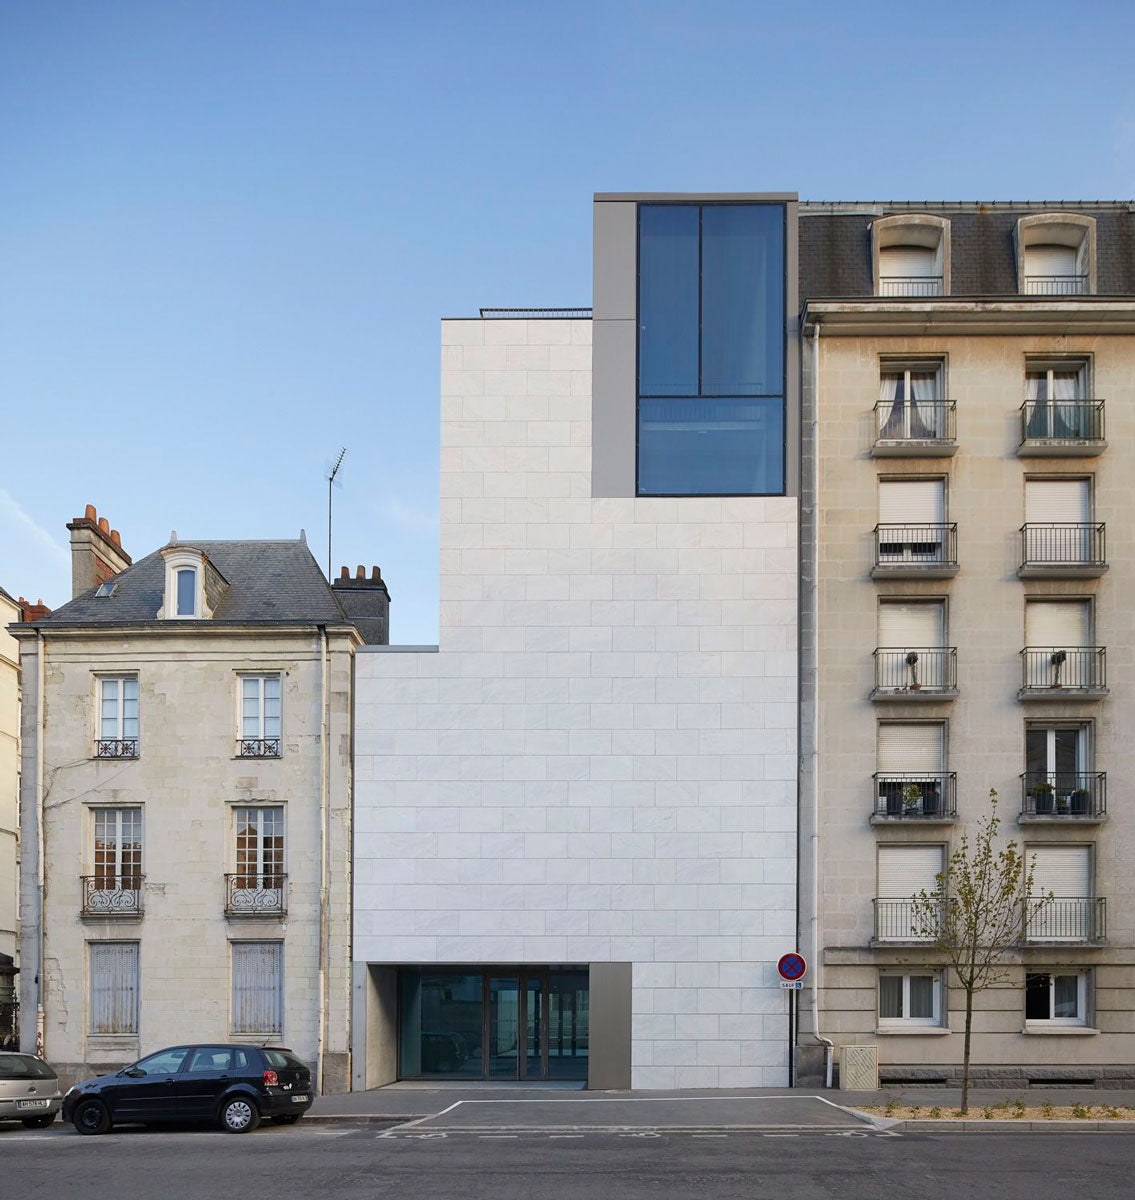 El Musée D’Arts de Nantes exhibe una fachada de mármol acompañada de un diseño geométrico.